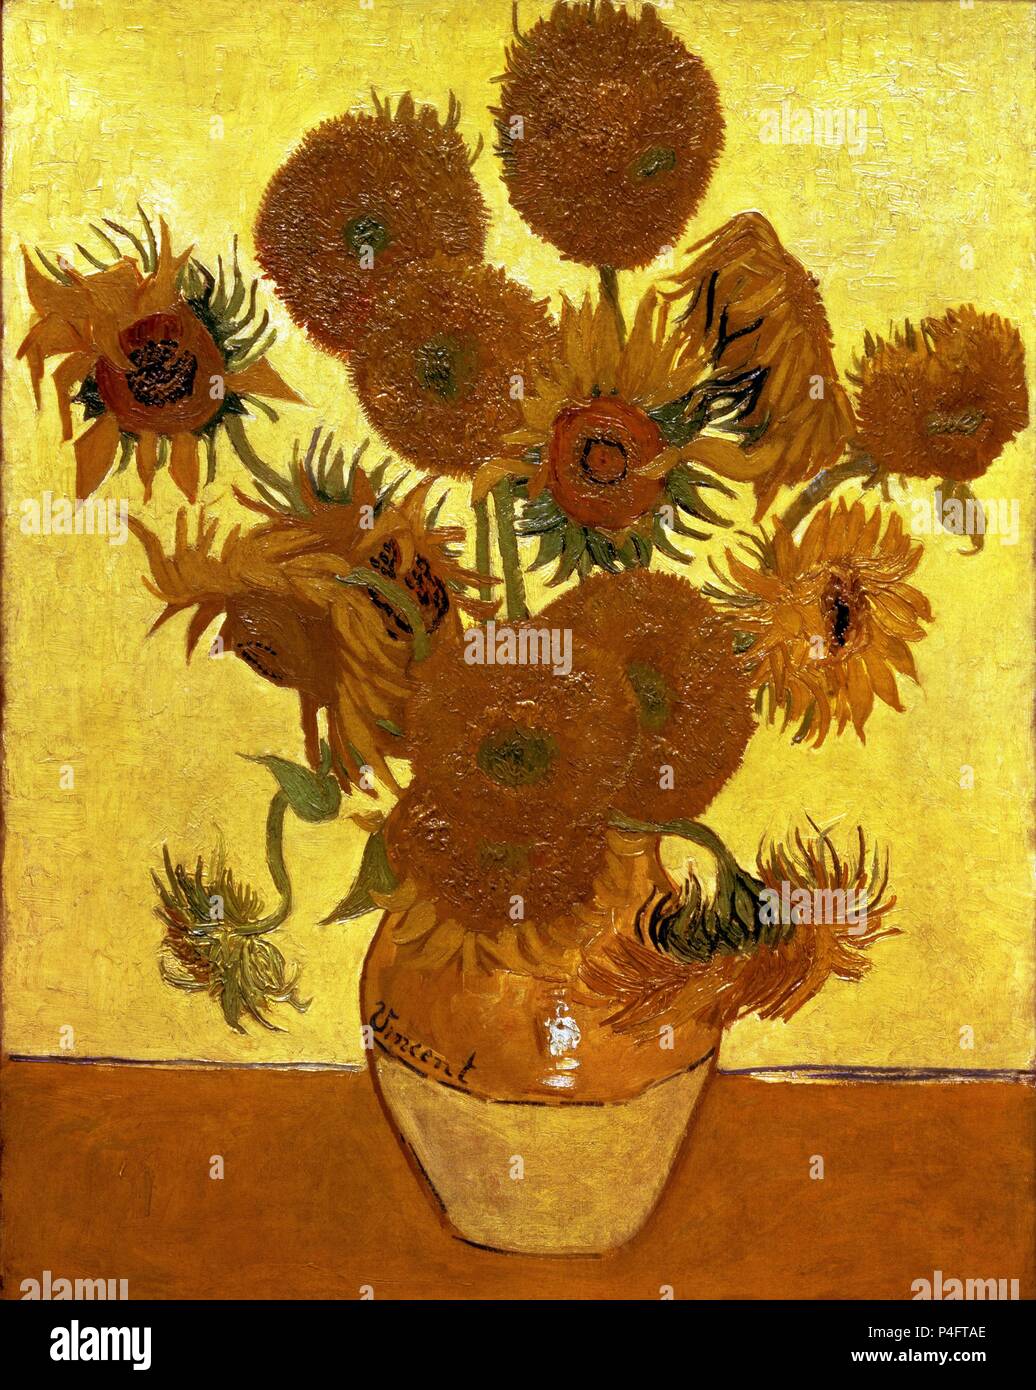 Niederländische Schule. Sonnenblumen. 1888. Öl auf Leinwand (93 x 73 cm). London, National Gallery. Autor: Vincent van Gogh (1853-1890). Lage: National Gallery, London, England. Stockfoto